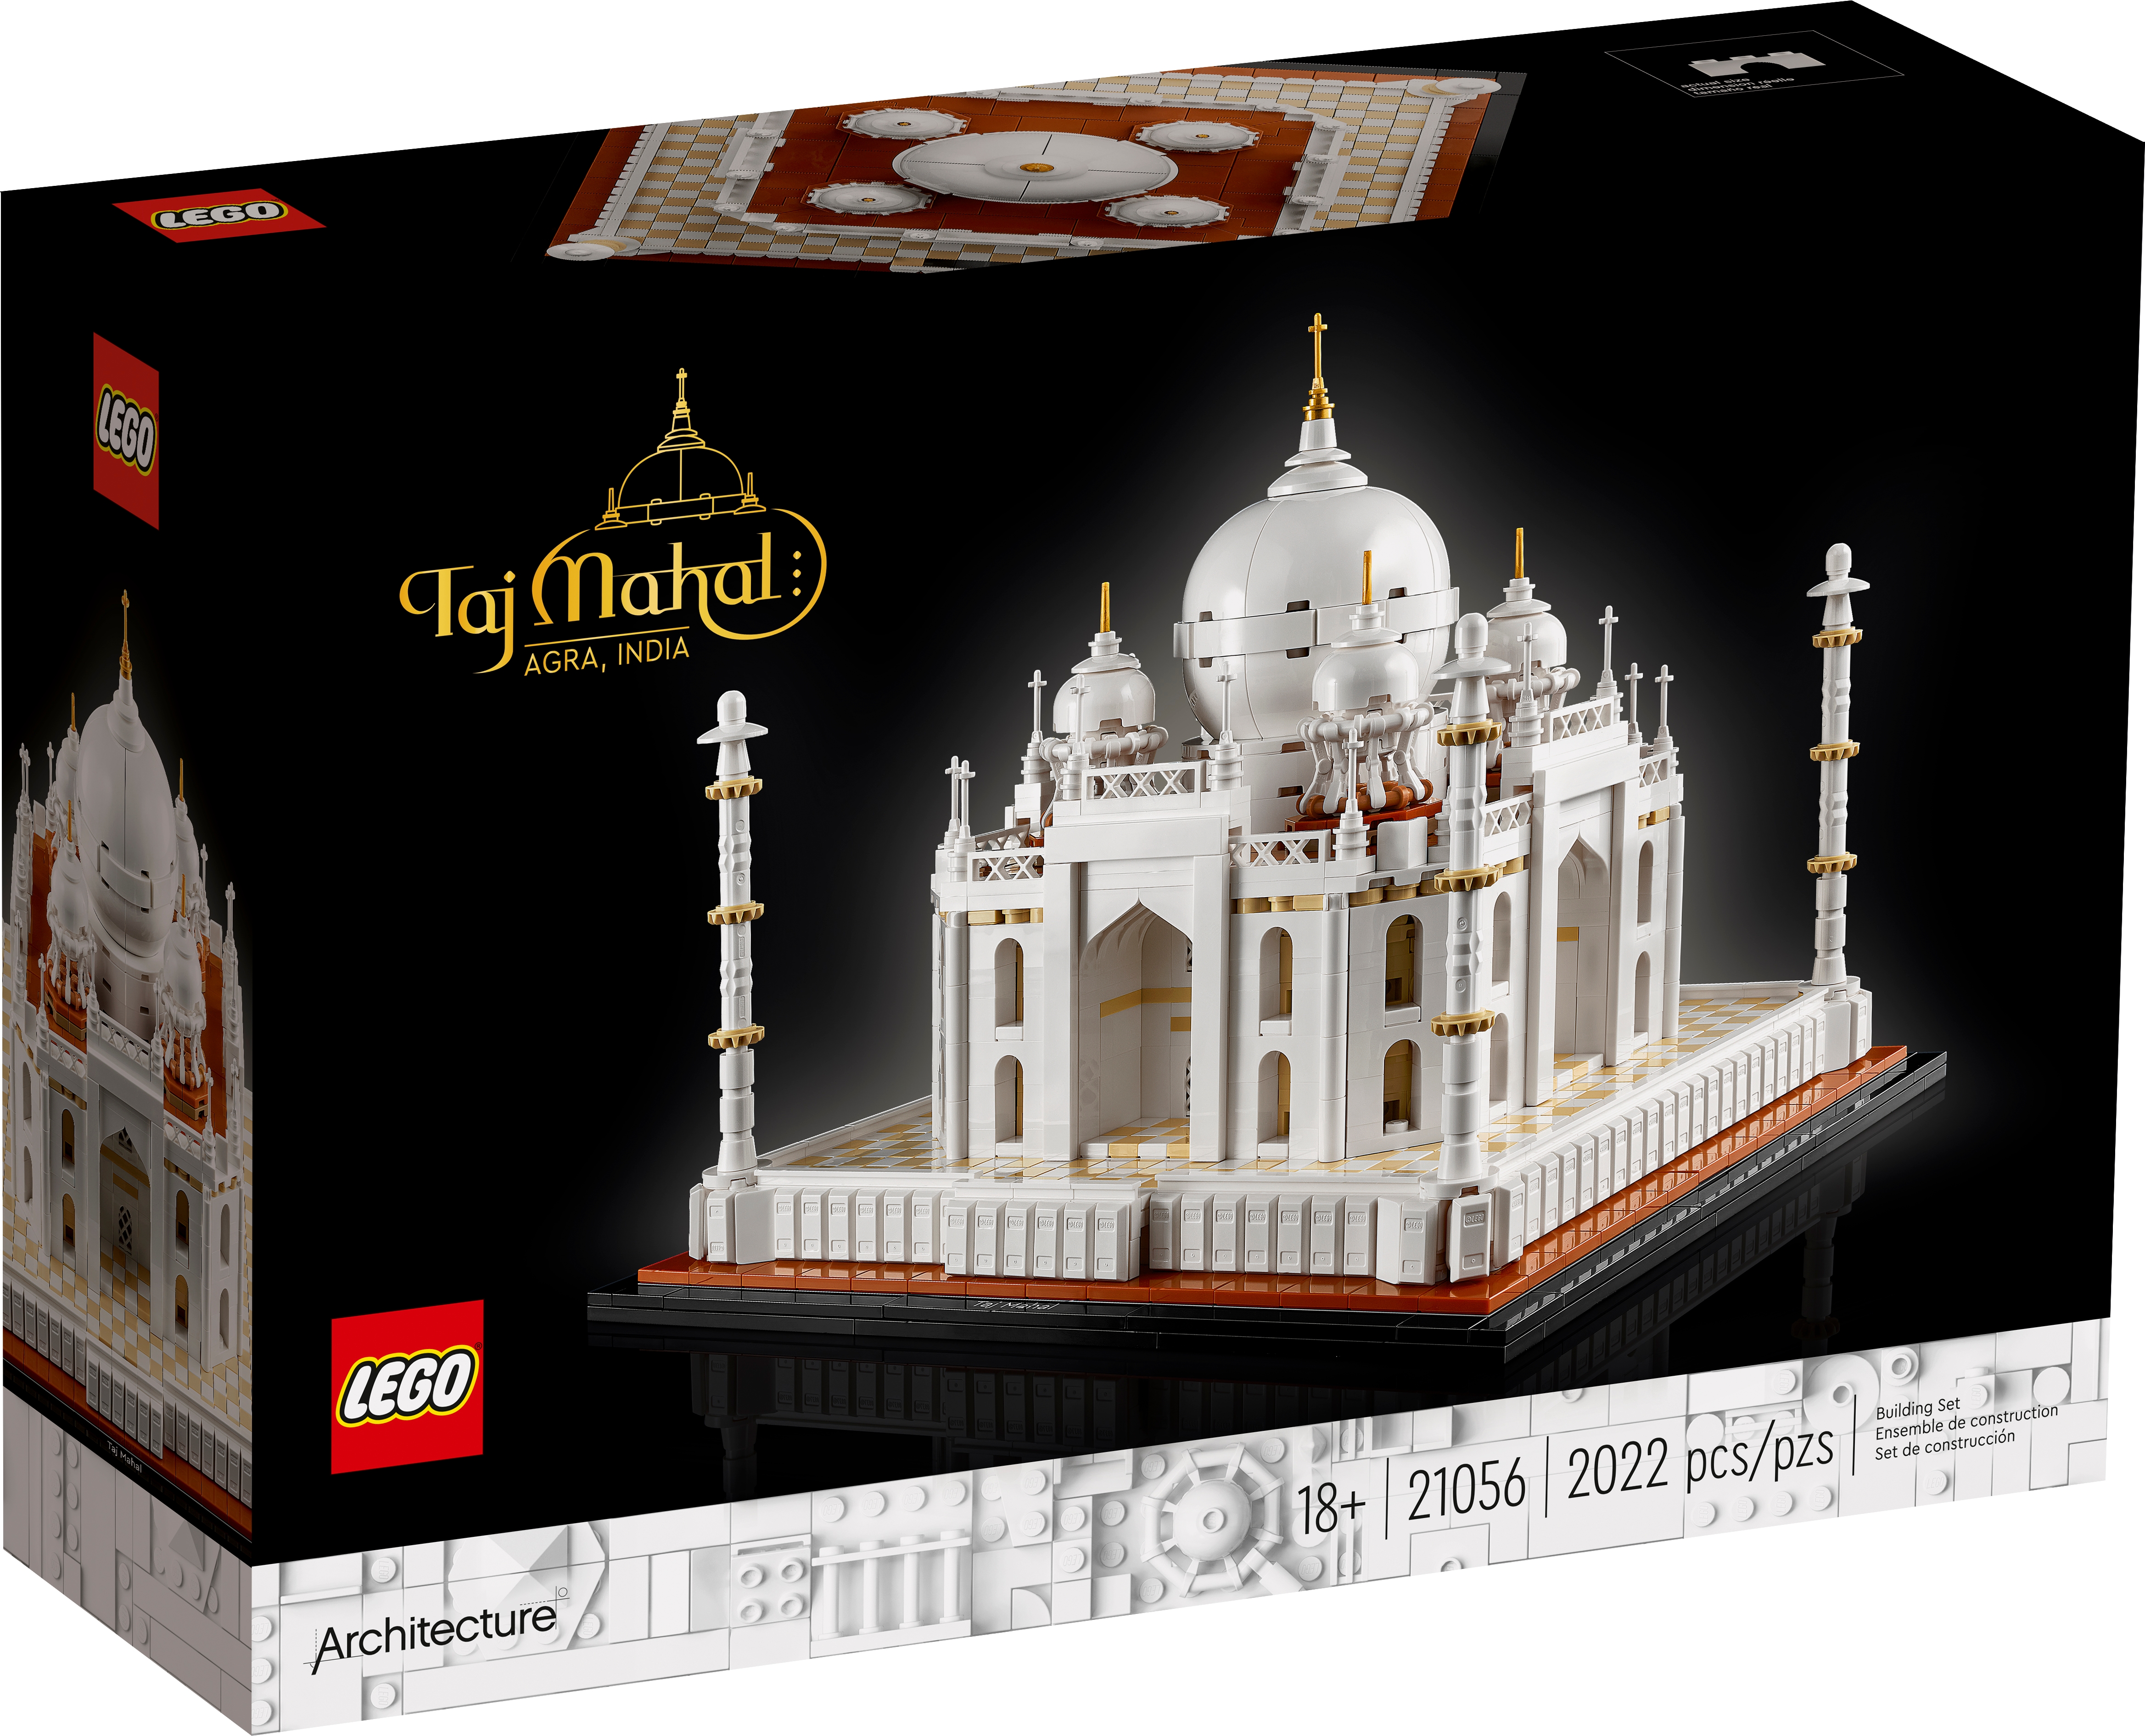 Rent LEGO set: Taj Mahal at Lend-a-Brick